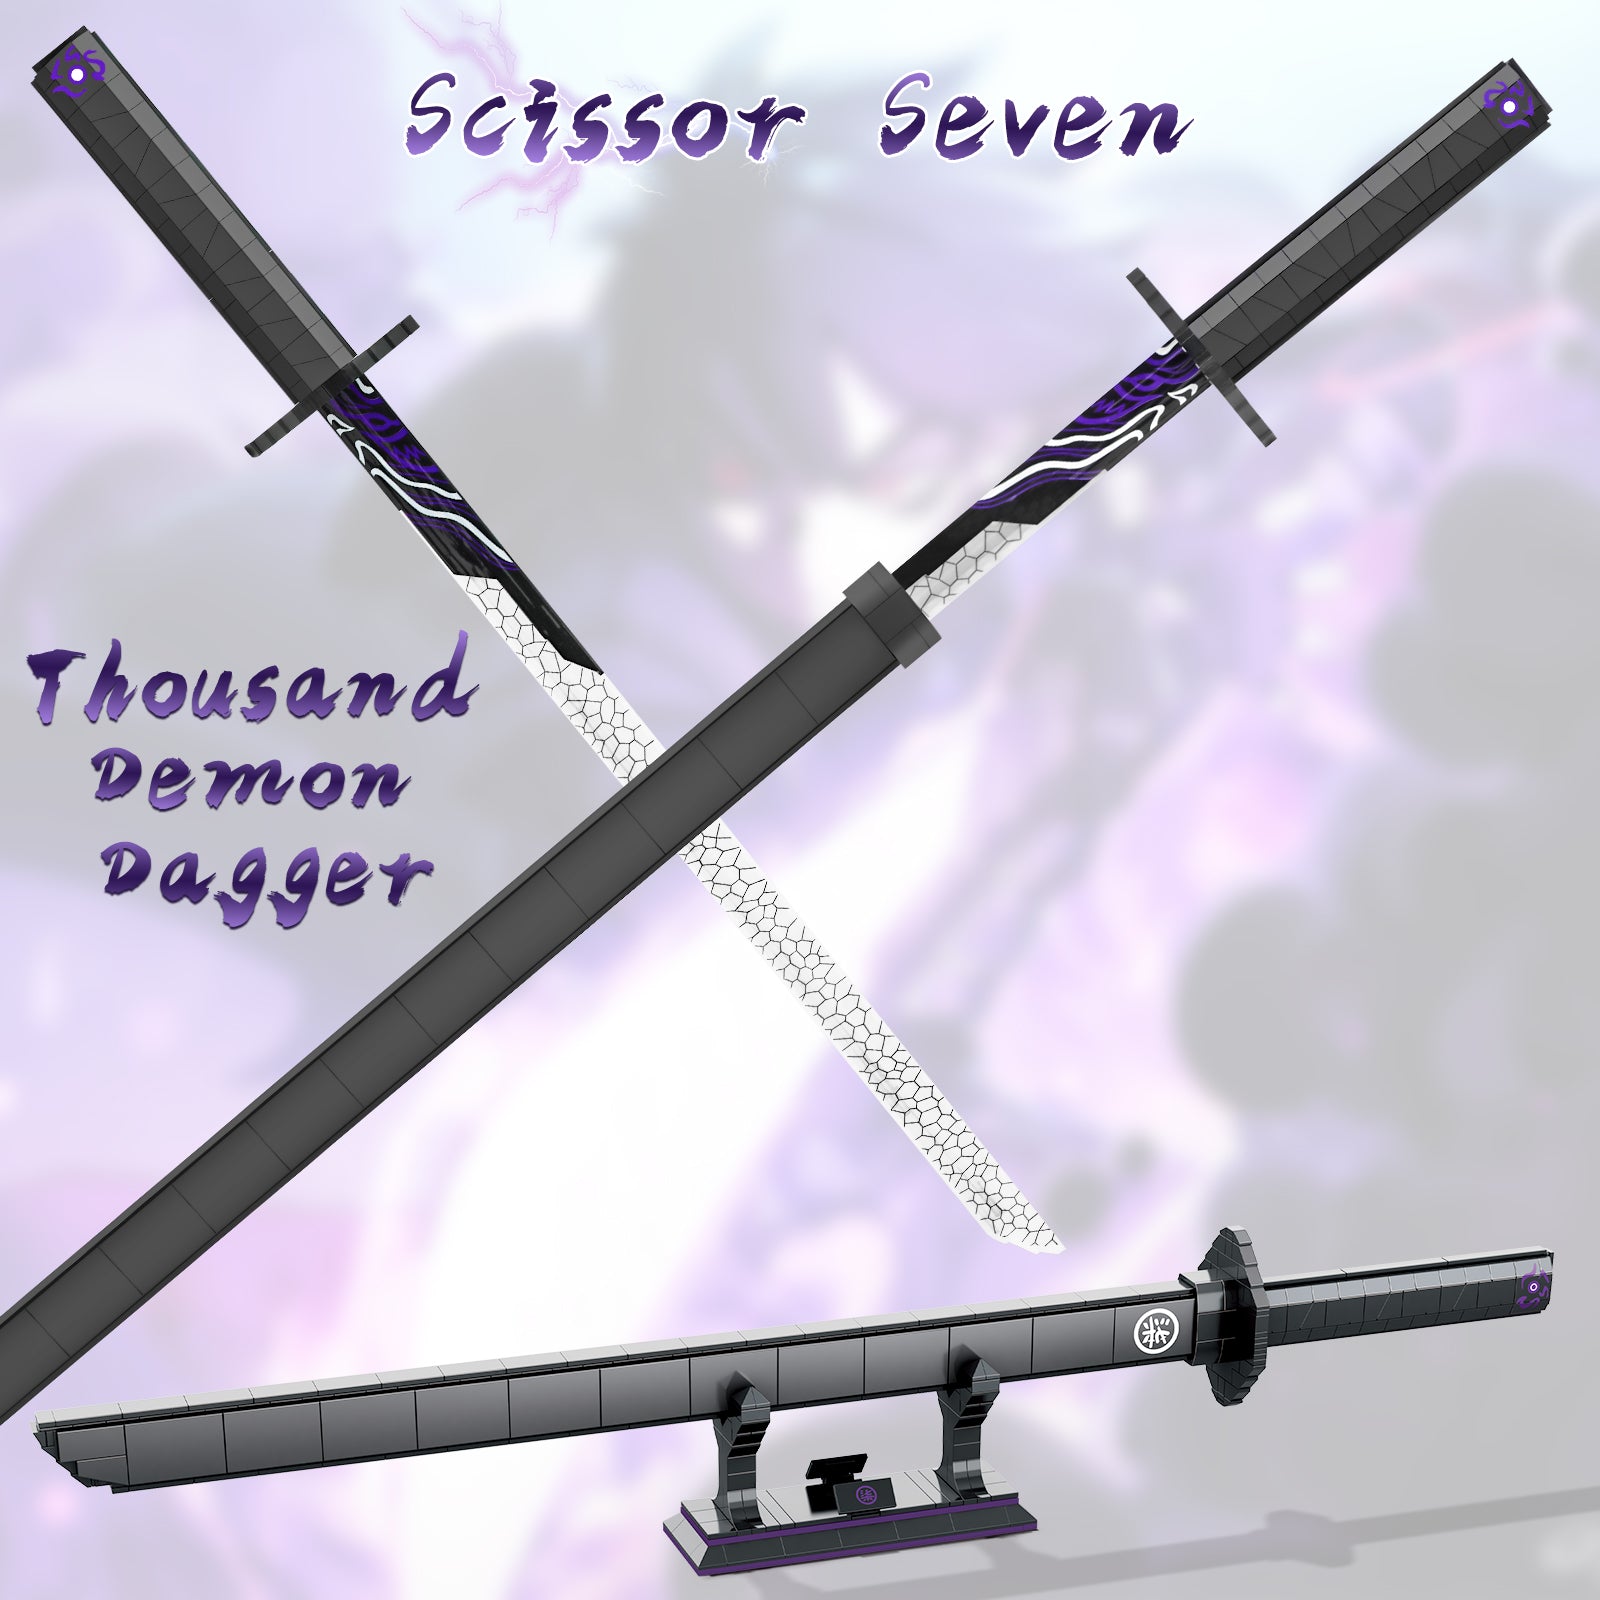 Killer Seven Sword